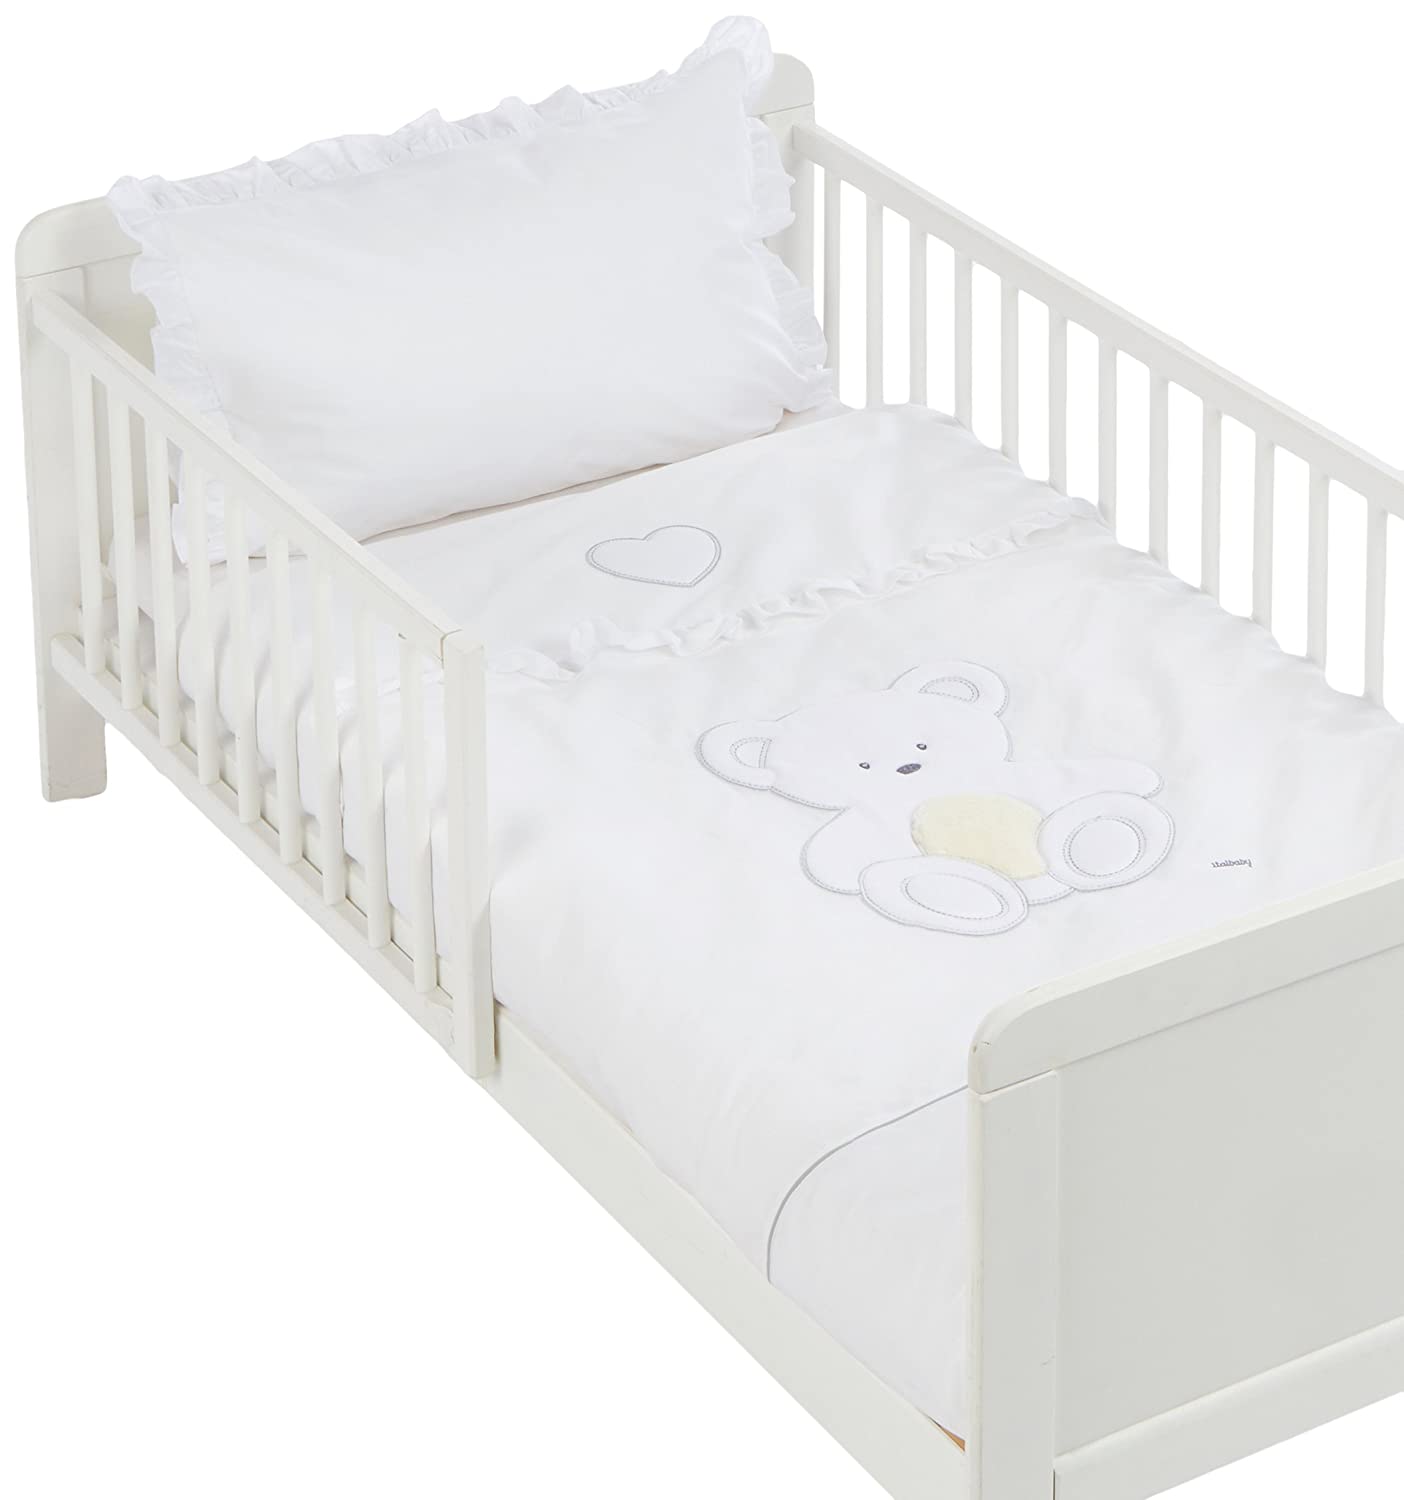 Italian Baby Plush Bedding Duvet Cover Set, White